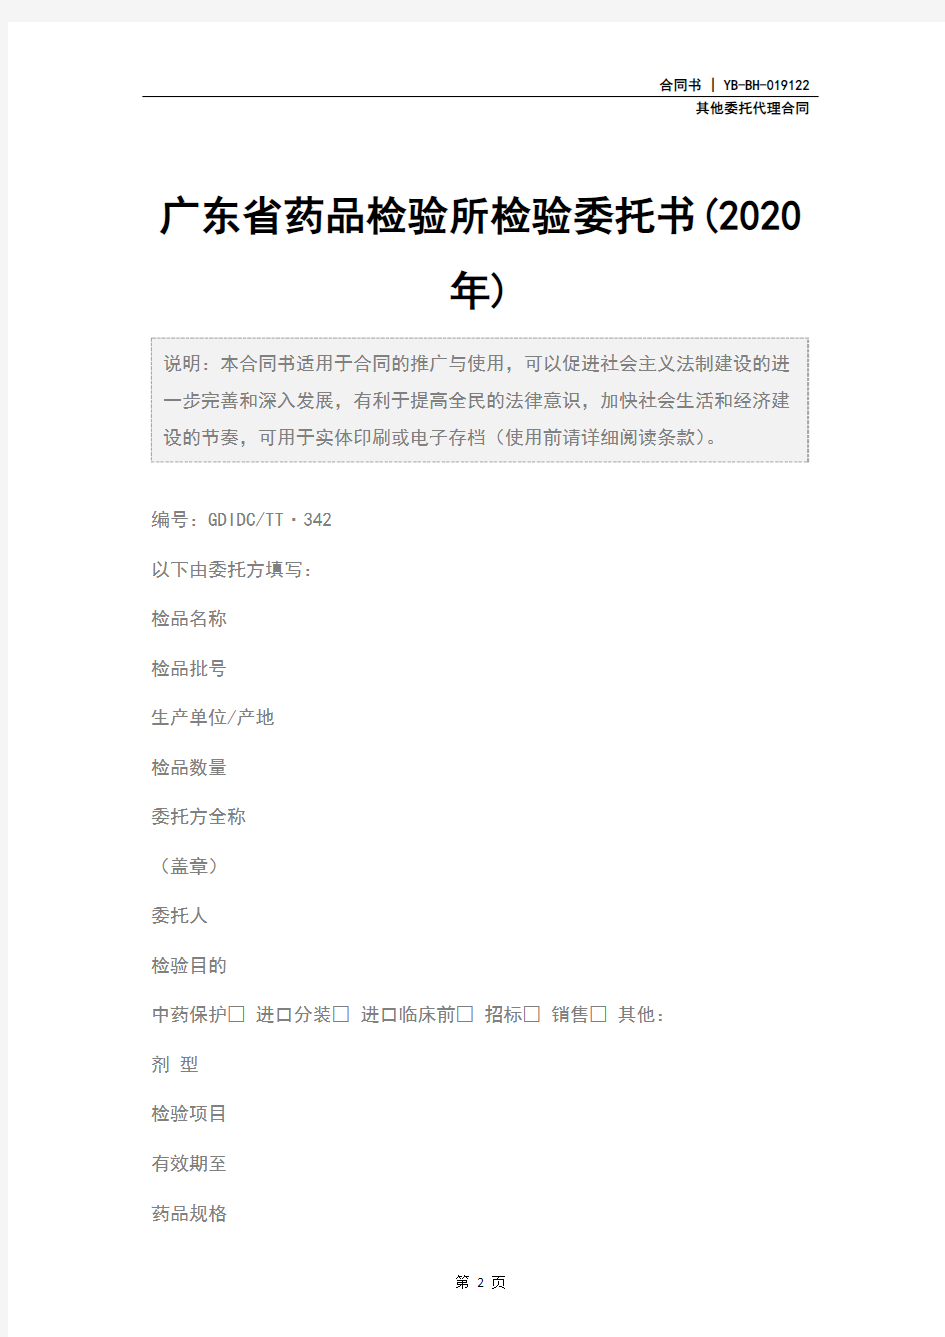 广东省药品检验所检验委托书(2020年)